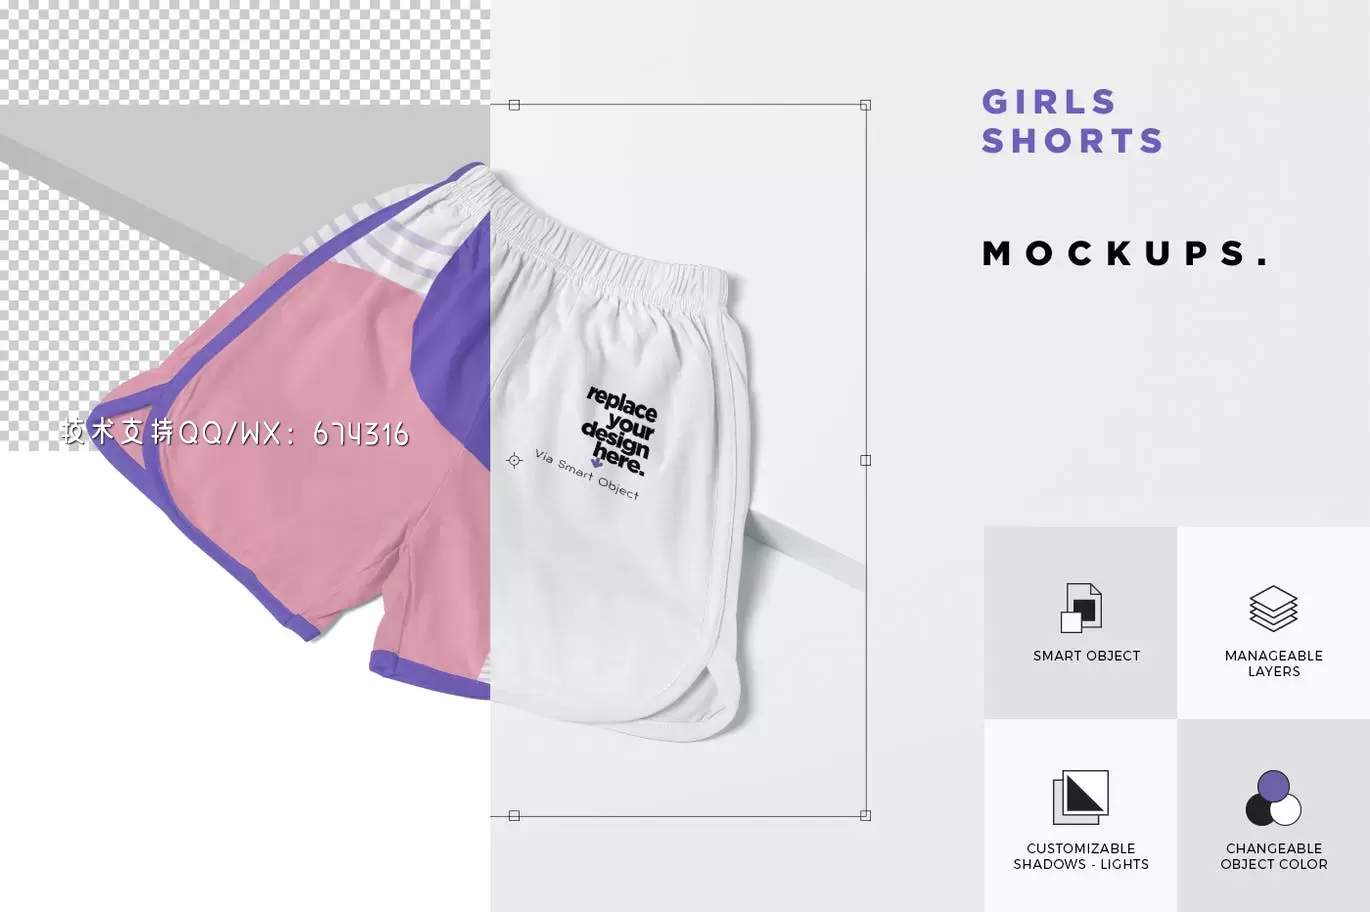 少见稀有的女士短裤服装设计VI样机展示模型mockups免费下载插图2